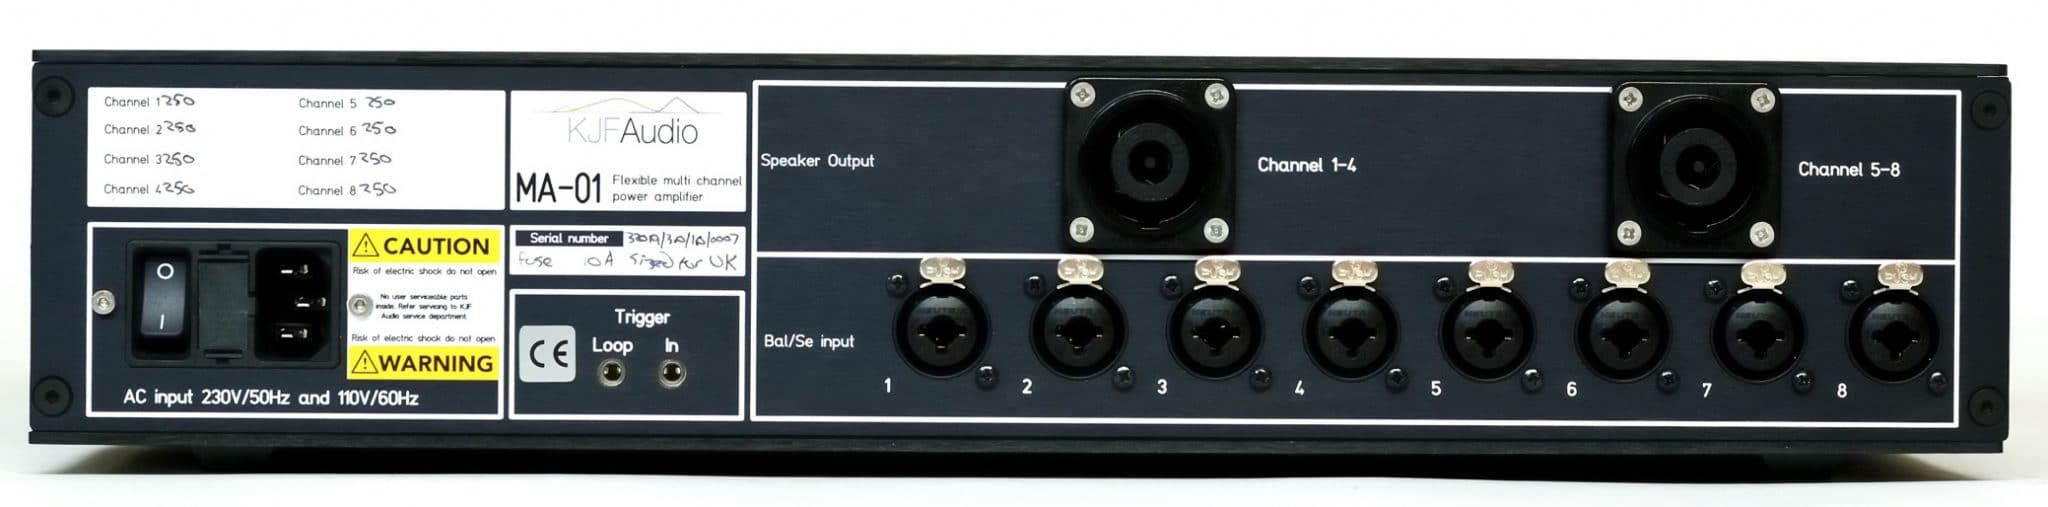 MA-01 flexible amplifier From KJF Audio